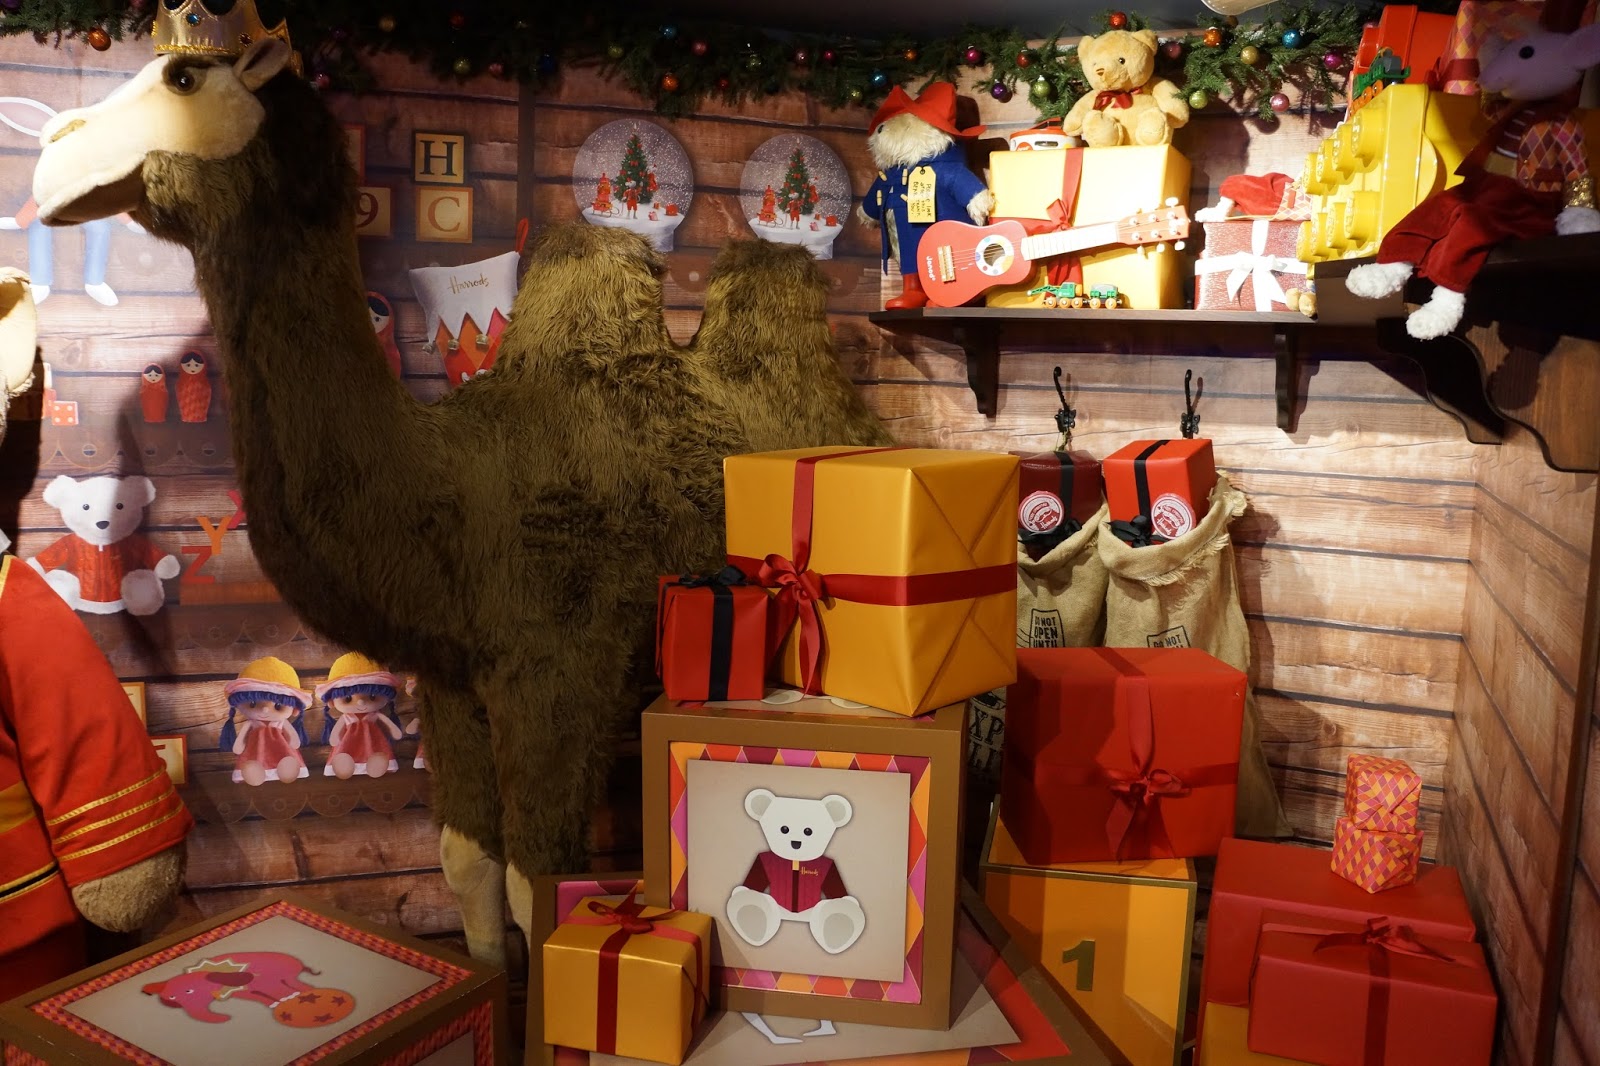 harrods christmas grotto 2015 giant toys toyshop